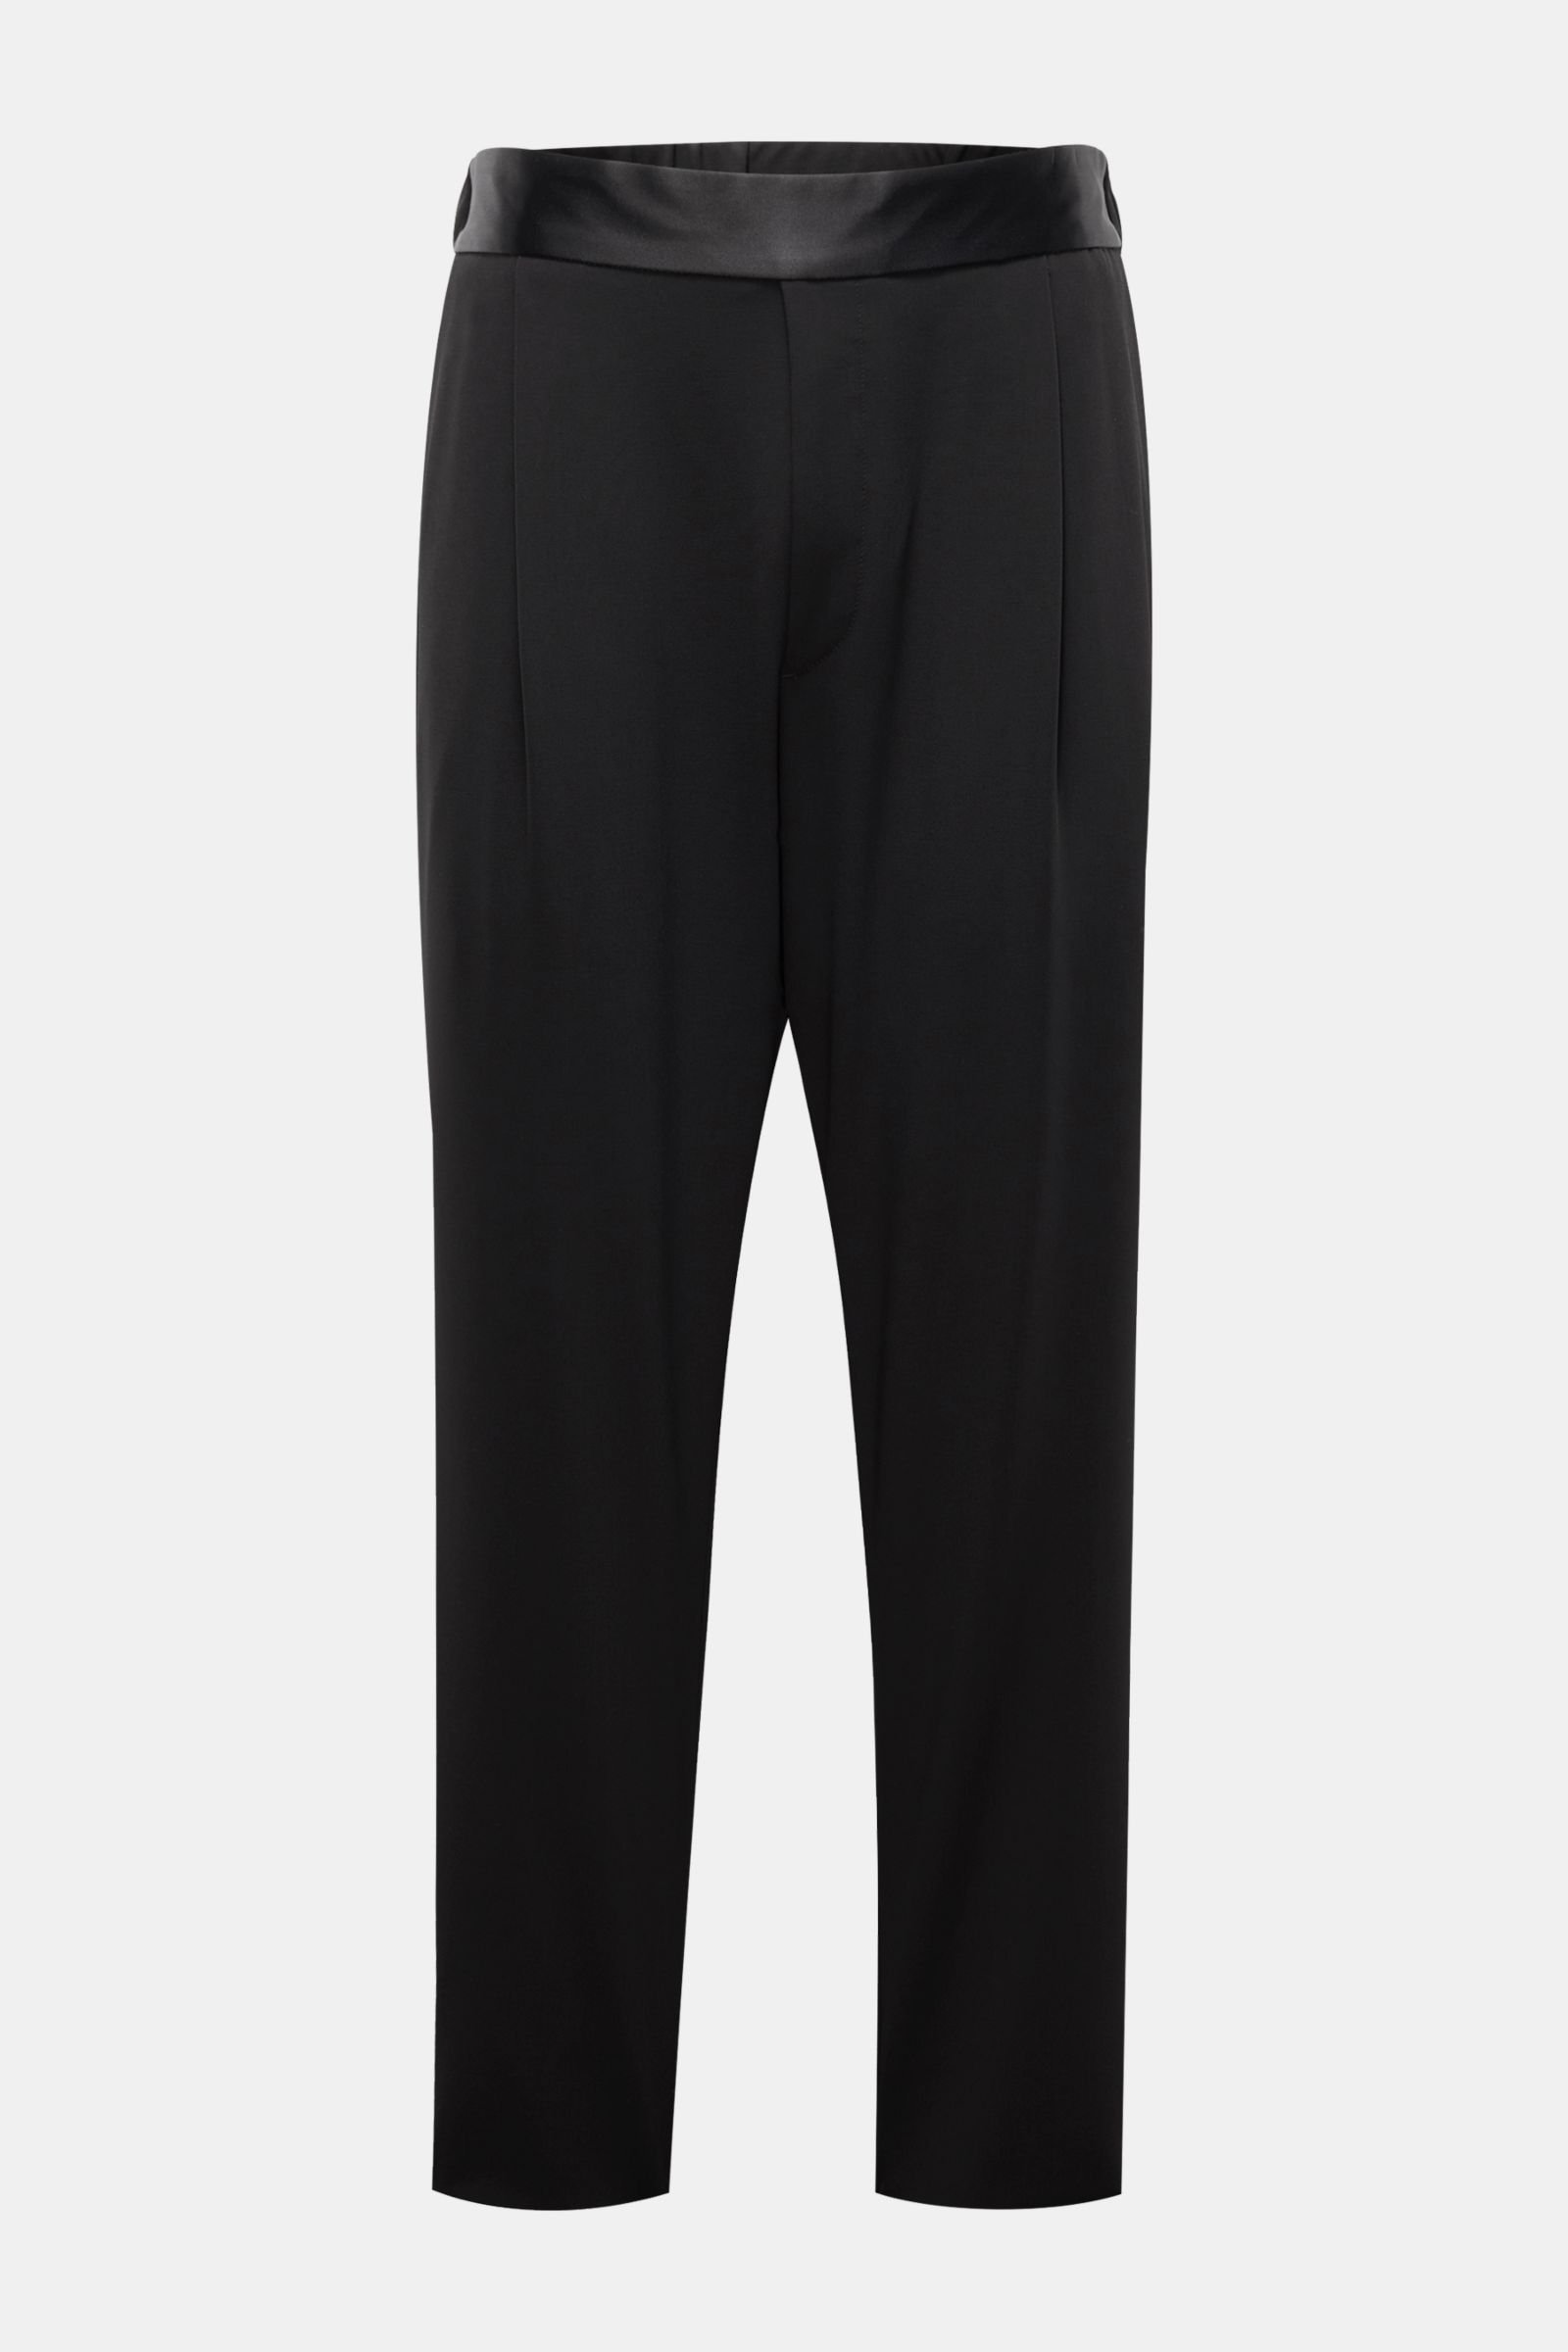 A|X Armani Exchange Men's Slim-Fit Brown Plaid Suit Pants - ShopStyle